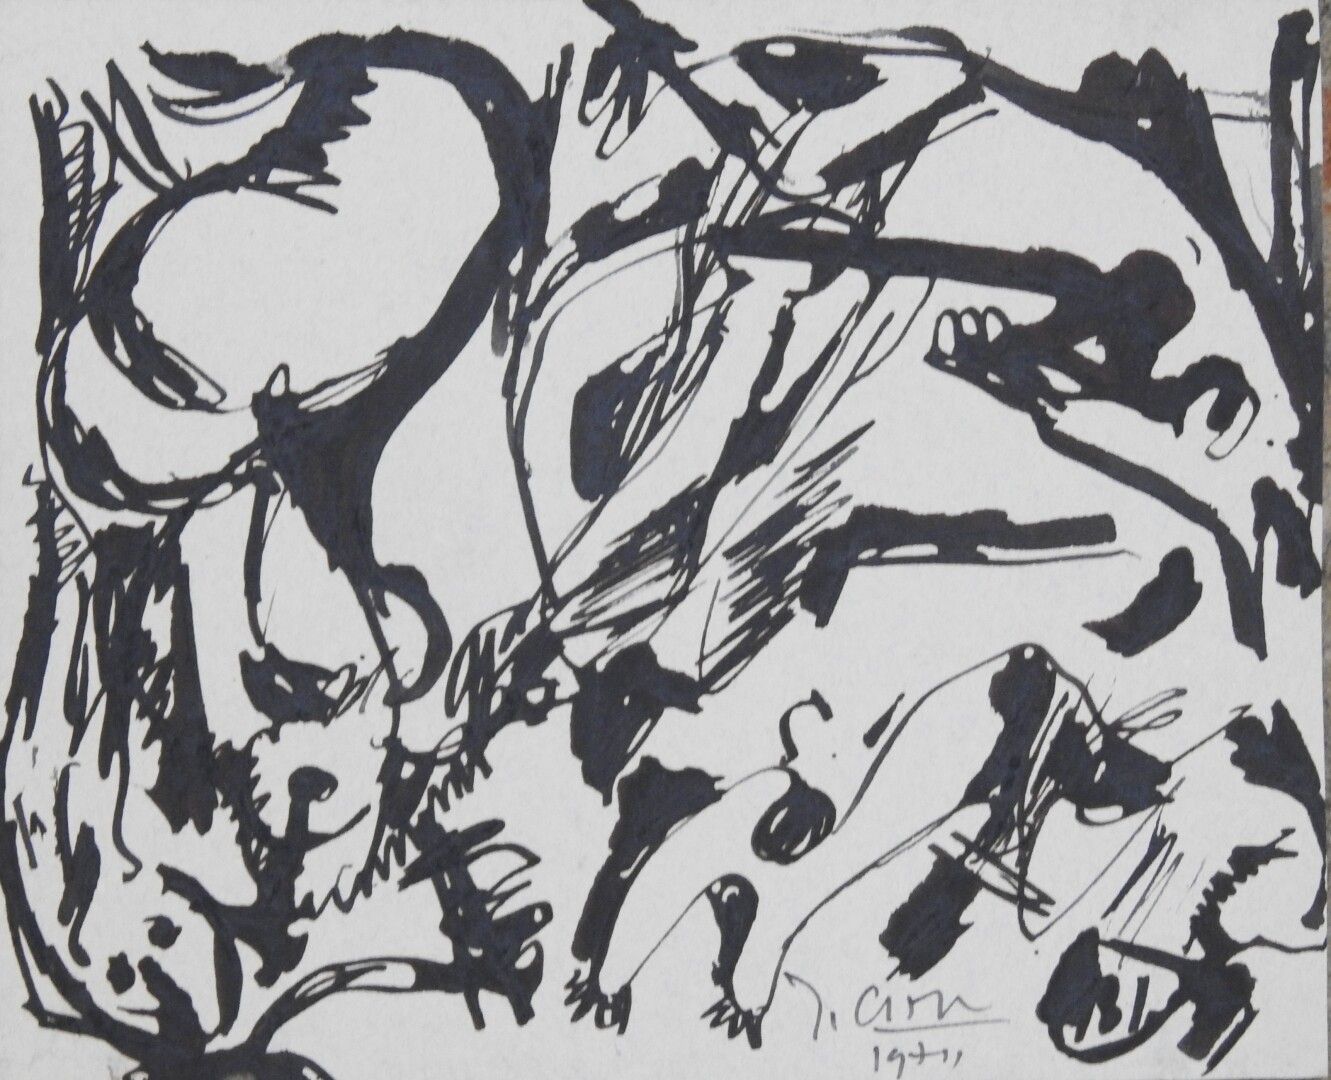 Null 让-乔治-夏普(1913-2002)

黑色的成分

灰纸上的水墨画，右下角有签名和日期1971年

16.5 x 19.5 cm 正在观看